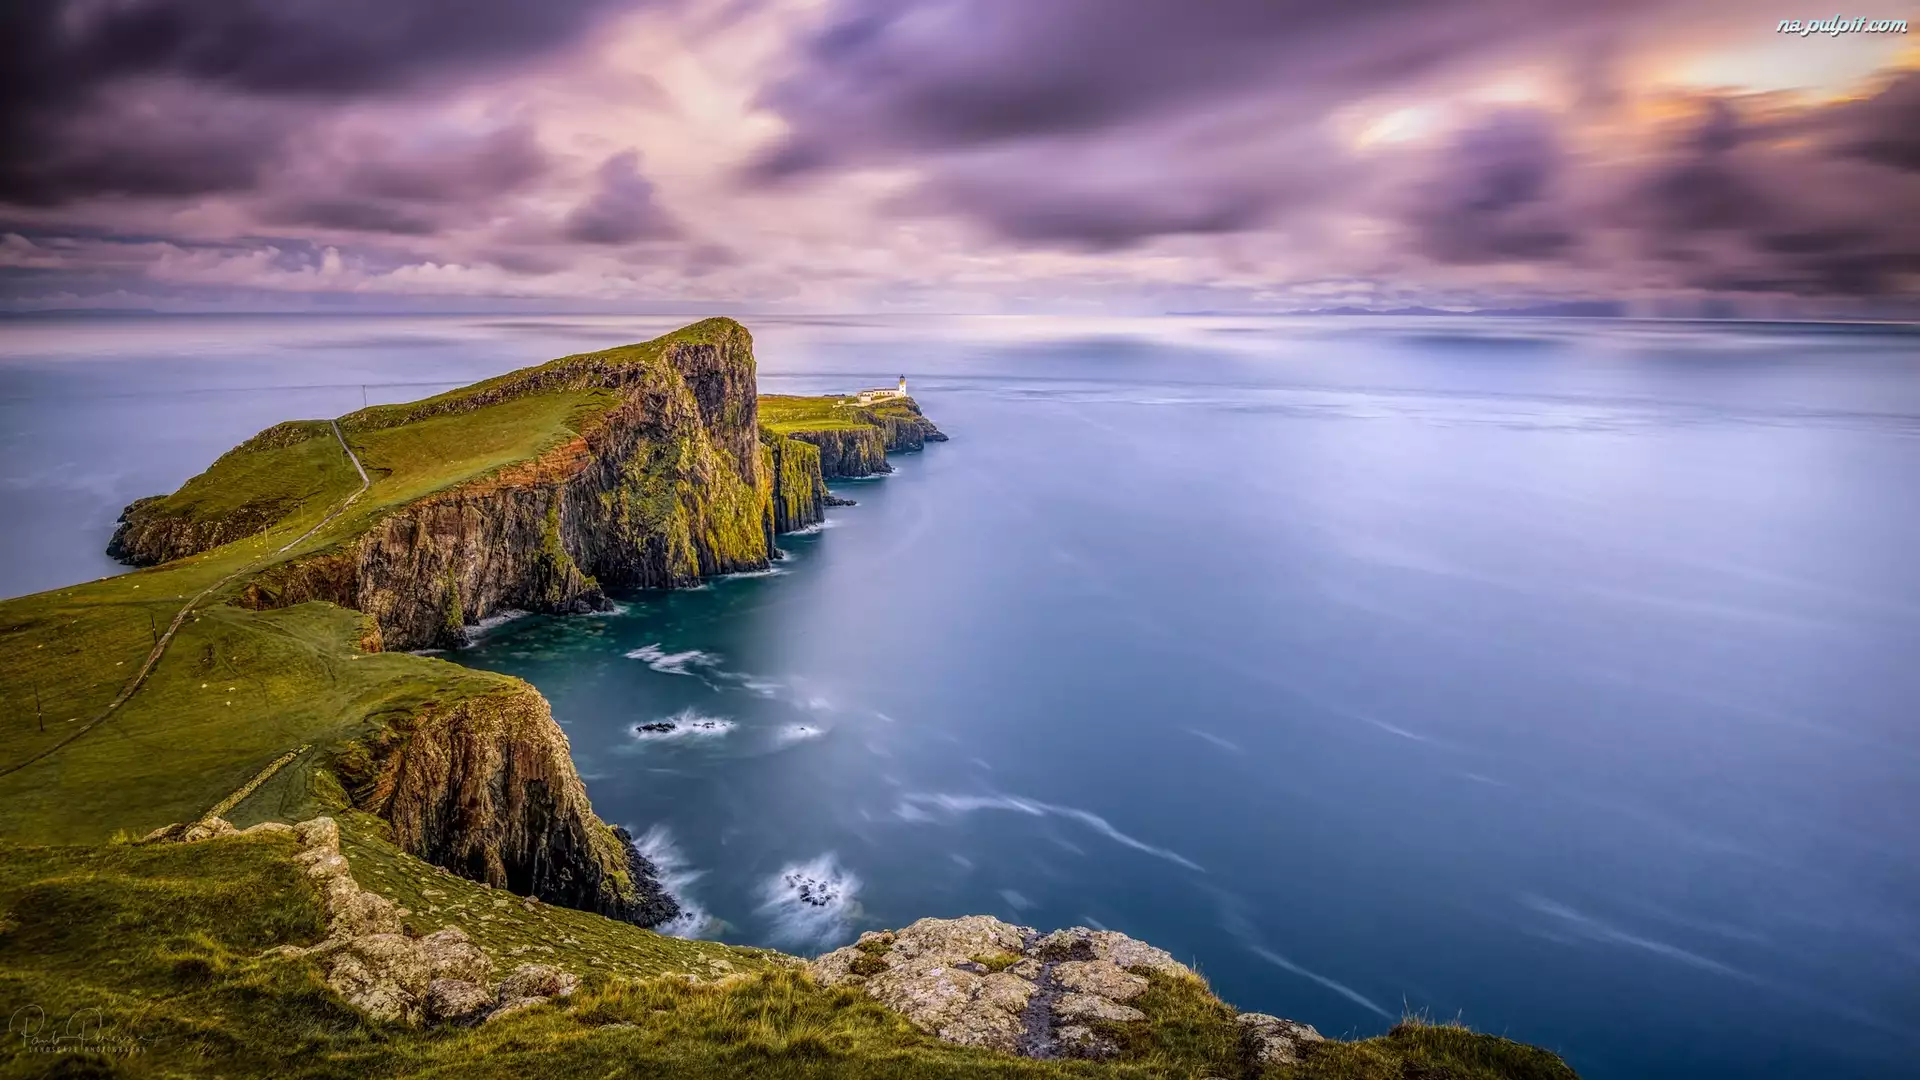 Szkocja, Wybrzeże, Półwysep Duirinish, Latarnia morska, Neist Point Lighthouse, Klif, Skały, Morze Szkockie, Wyspa Skye